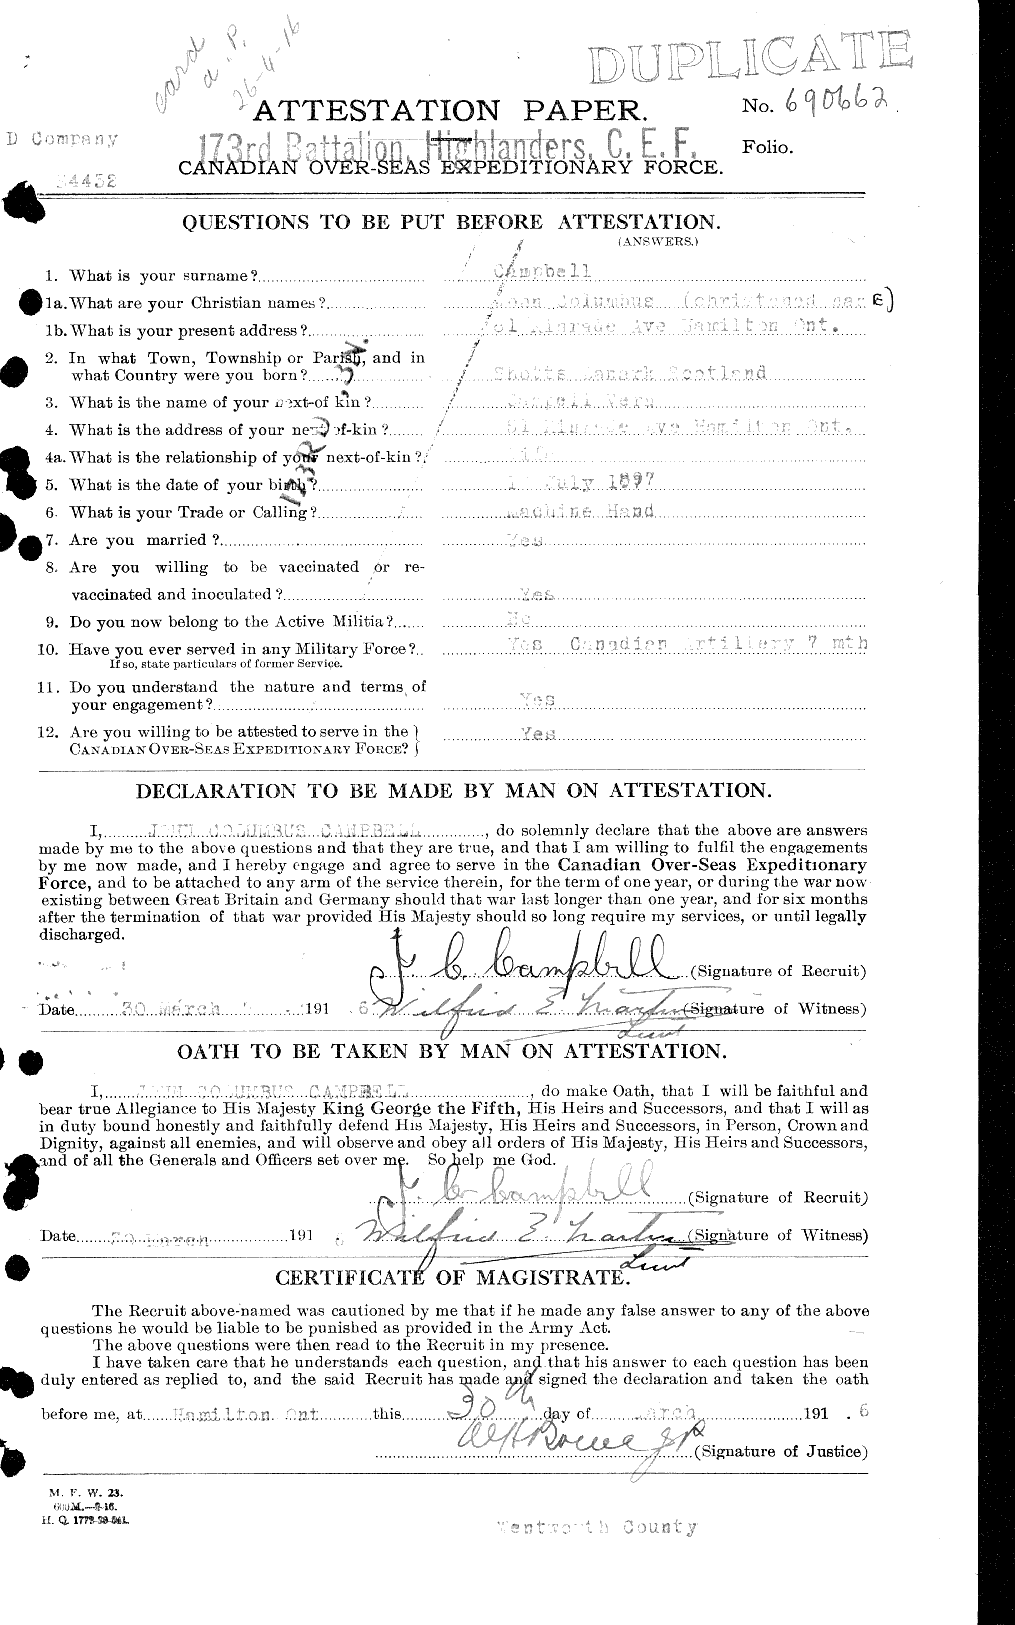 Dossiers du Personnel de la Première Guerre mondiale - CEC 006885a